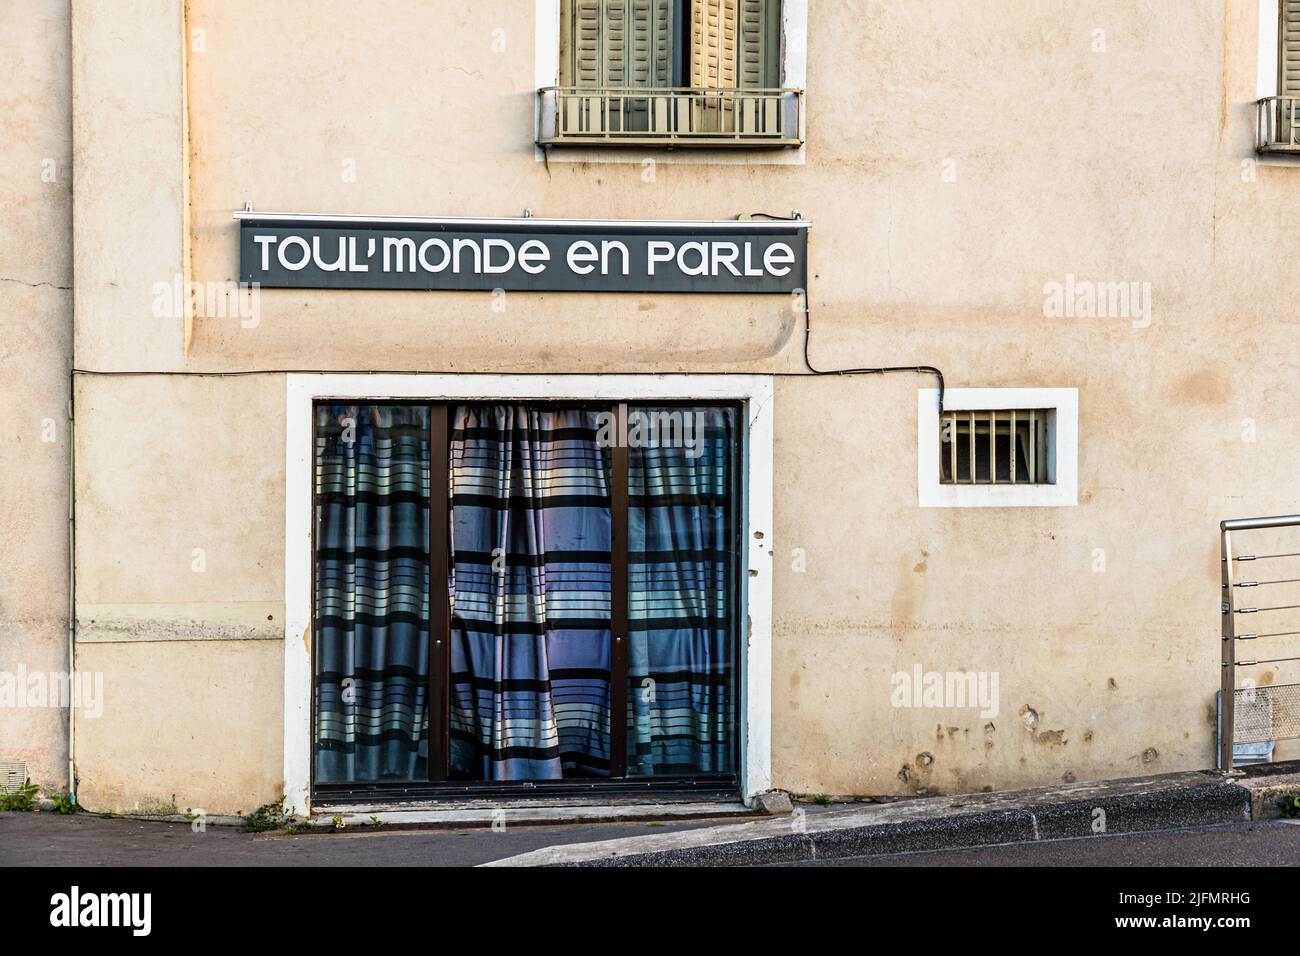 Vetrina shabby a Chalon-sur-Saône (Francia). L'affermazione pubblicitaria è: 'Toull'onde en parle' (tutto il mondo ne parla). Foto Stock